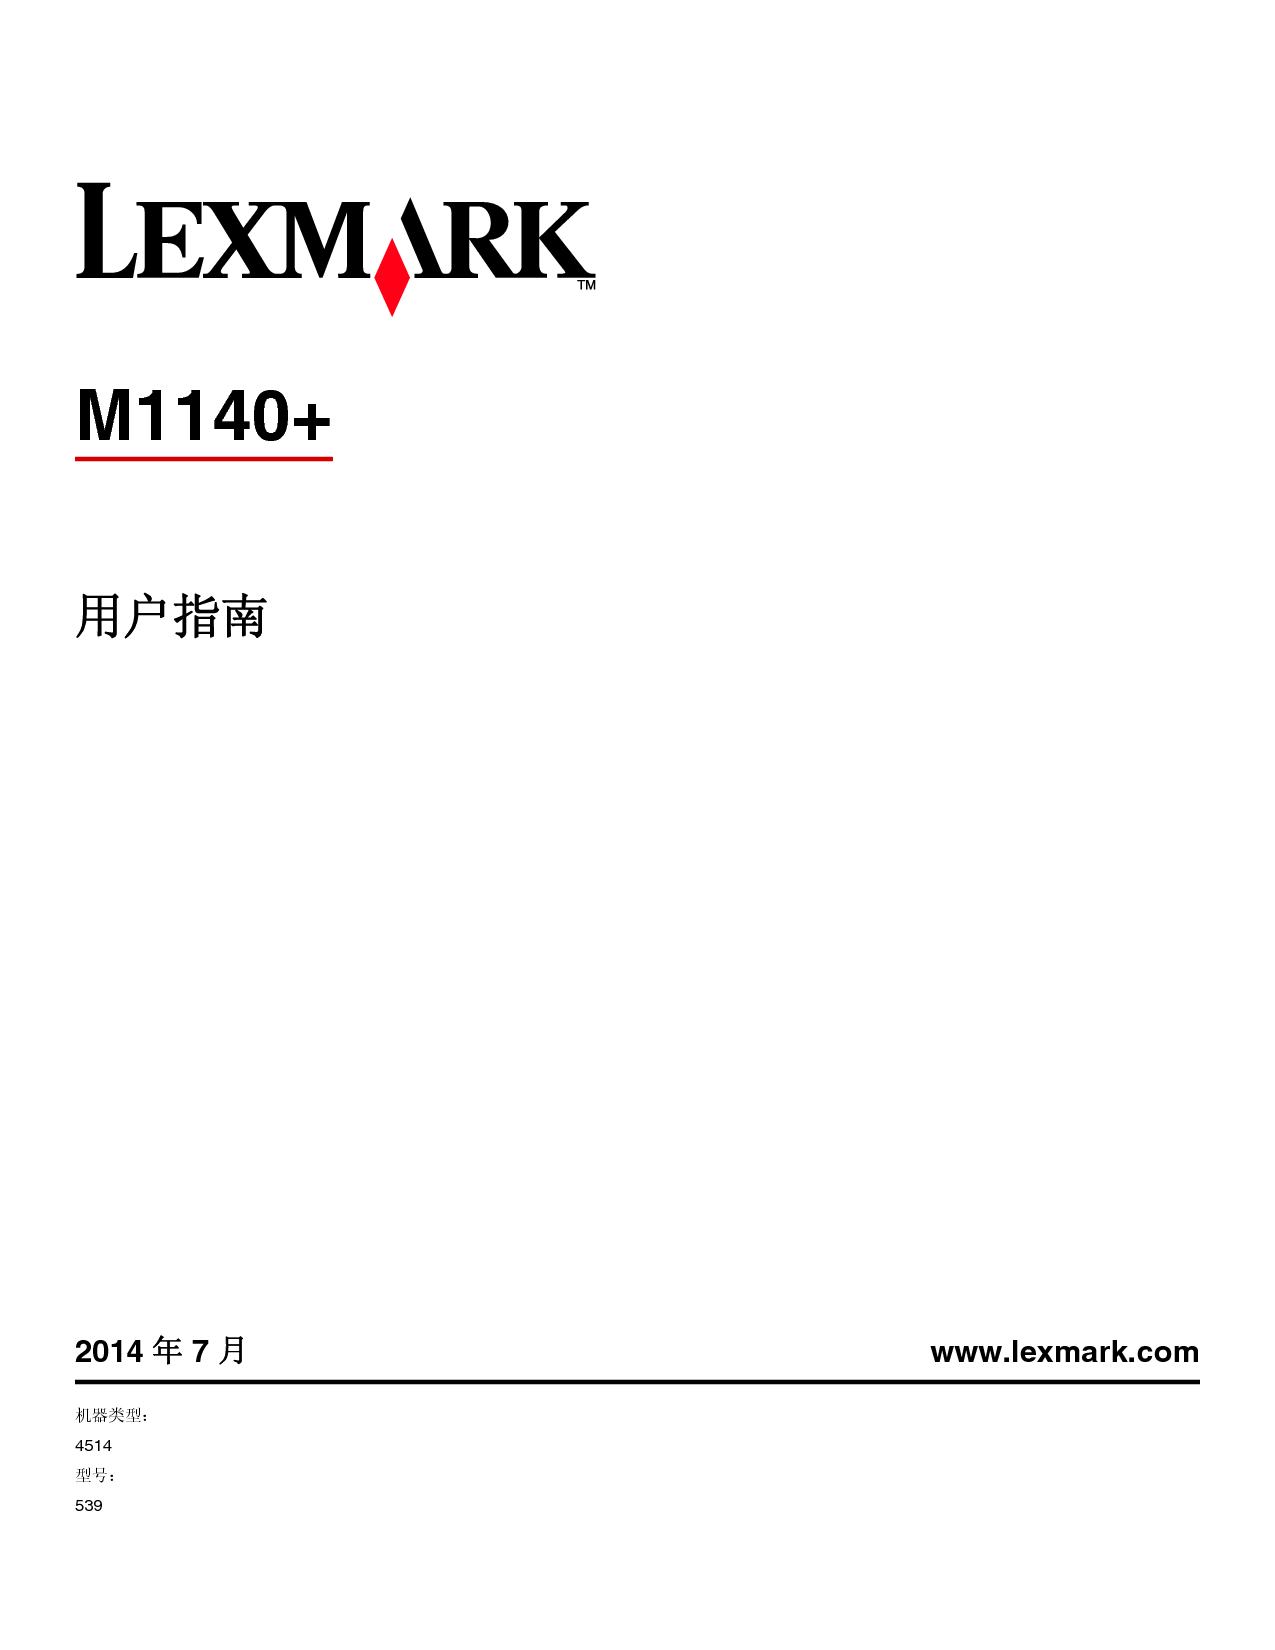 利盟 Lexmark M1140 用户指南 封面